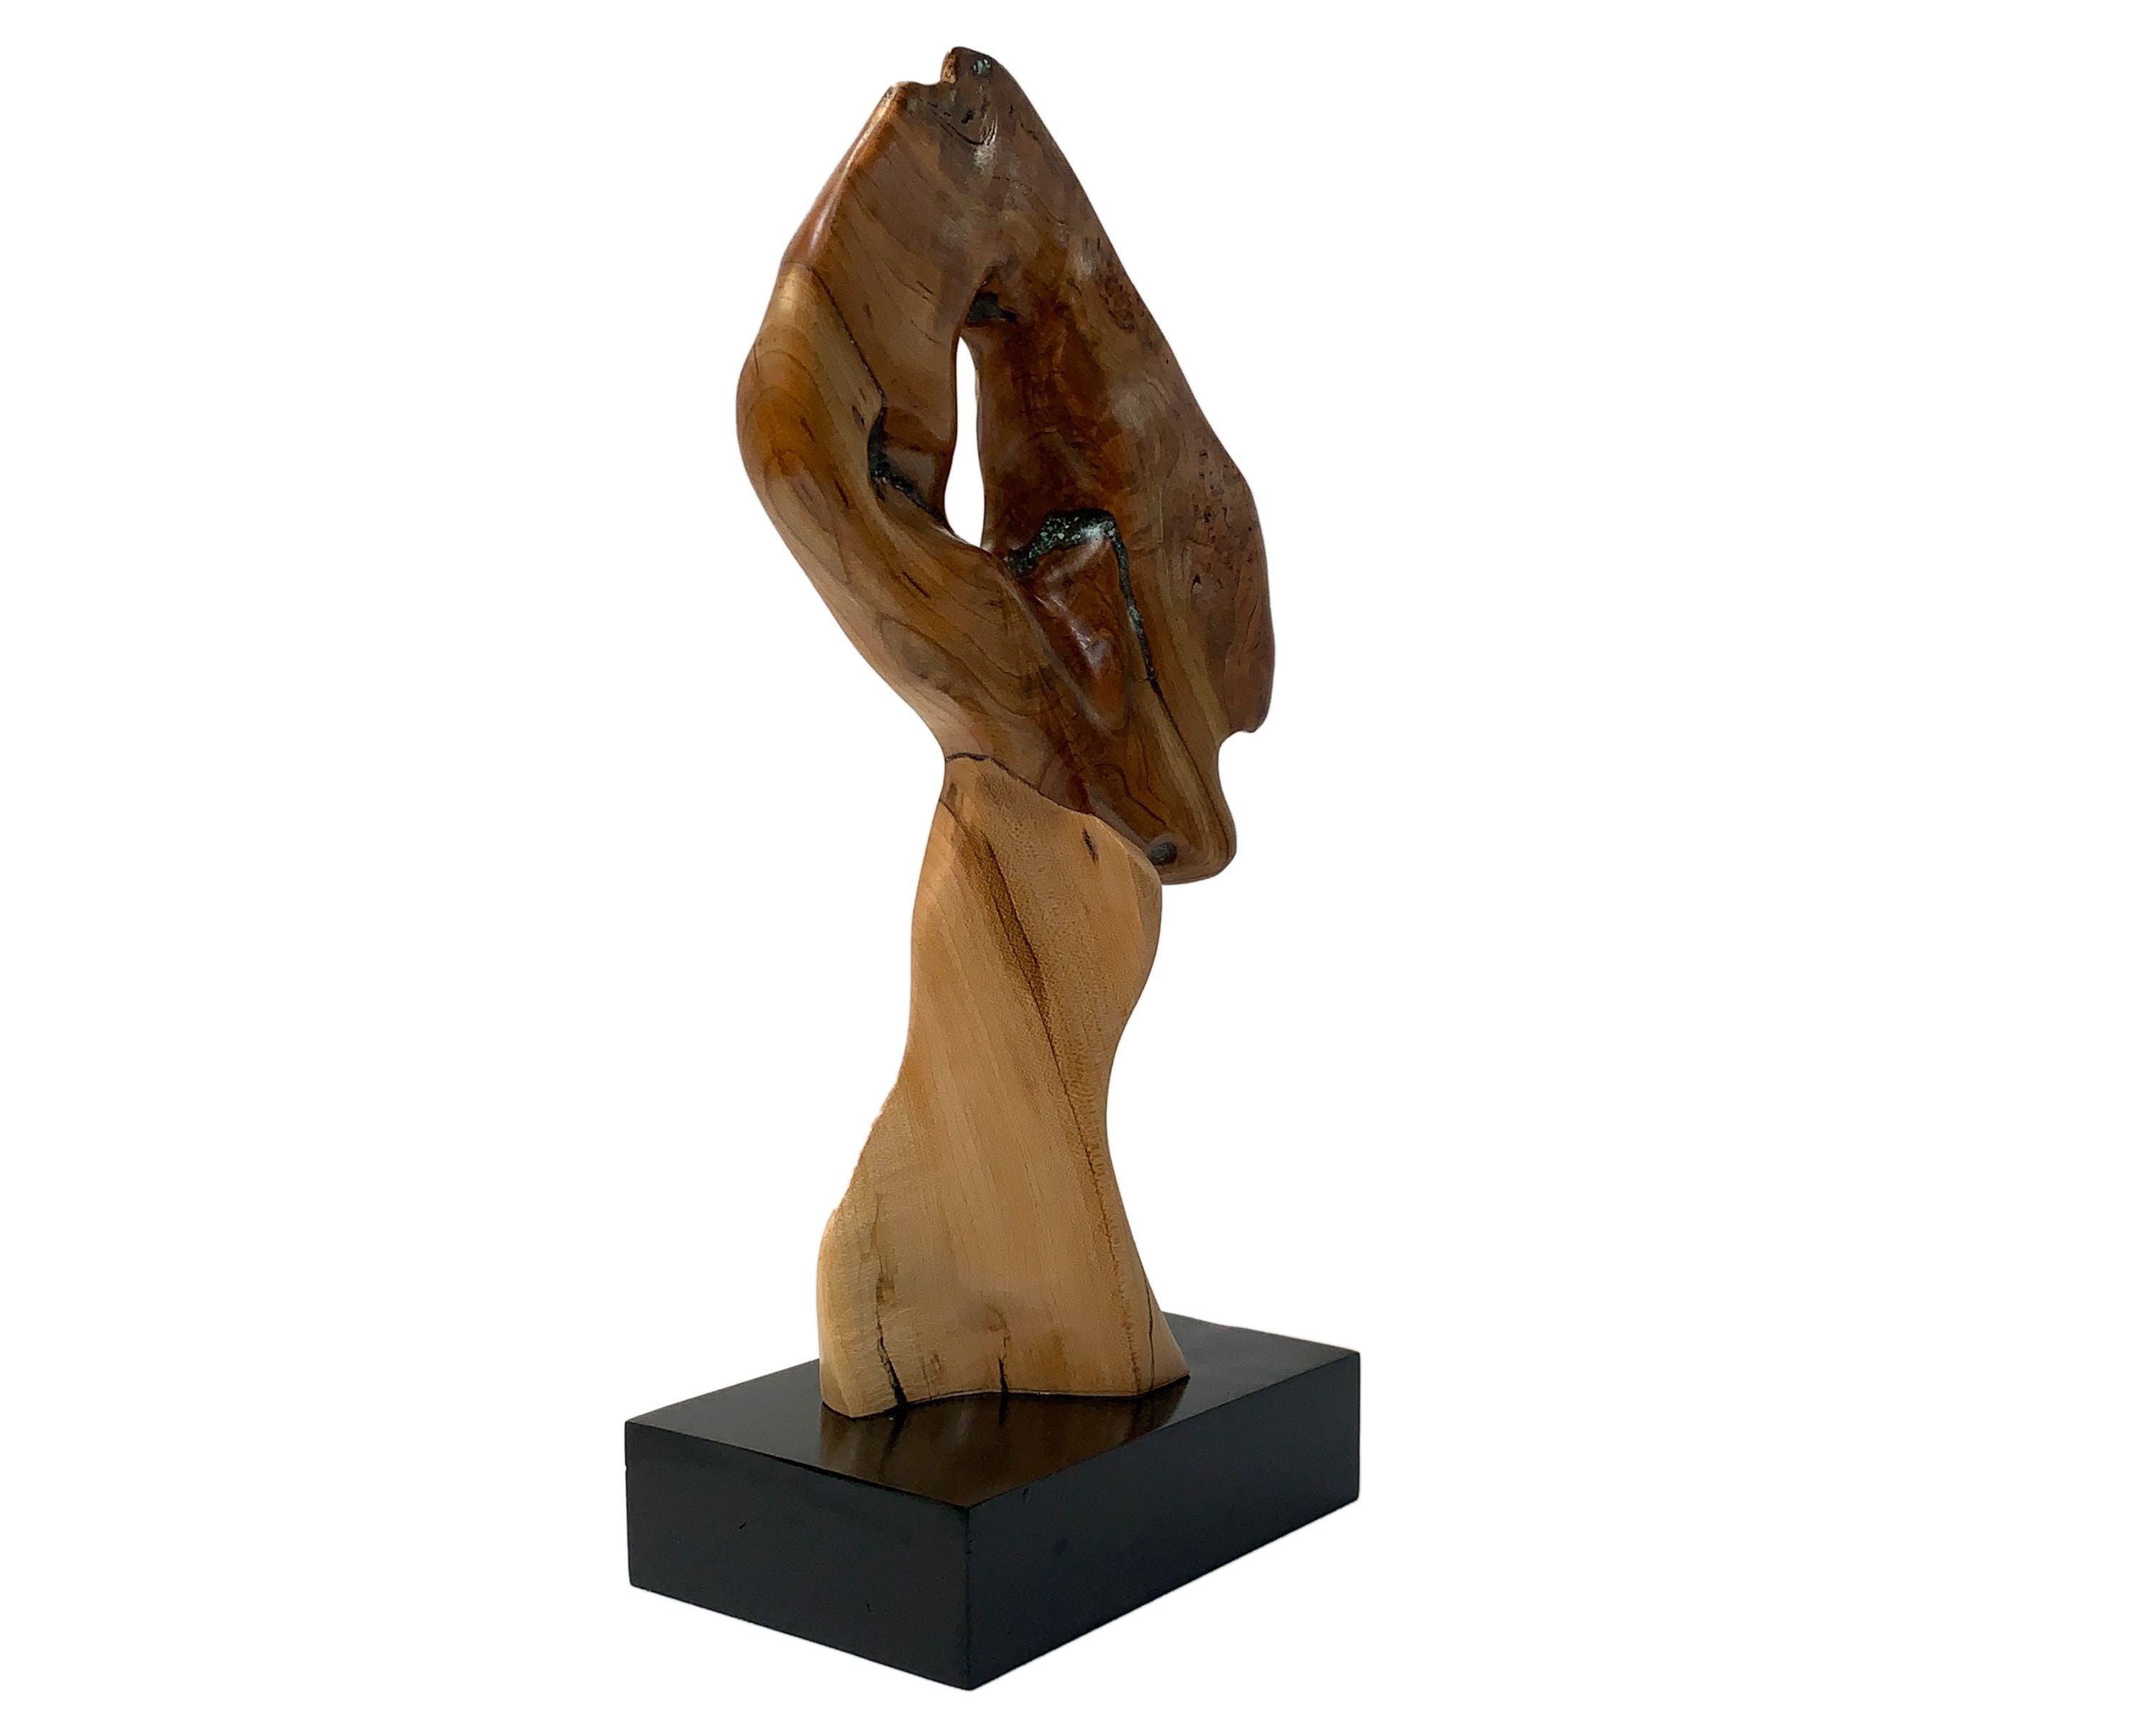 Modern Abstract 3d Wood Sculpture Décor Art Natural Wood